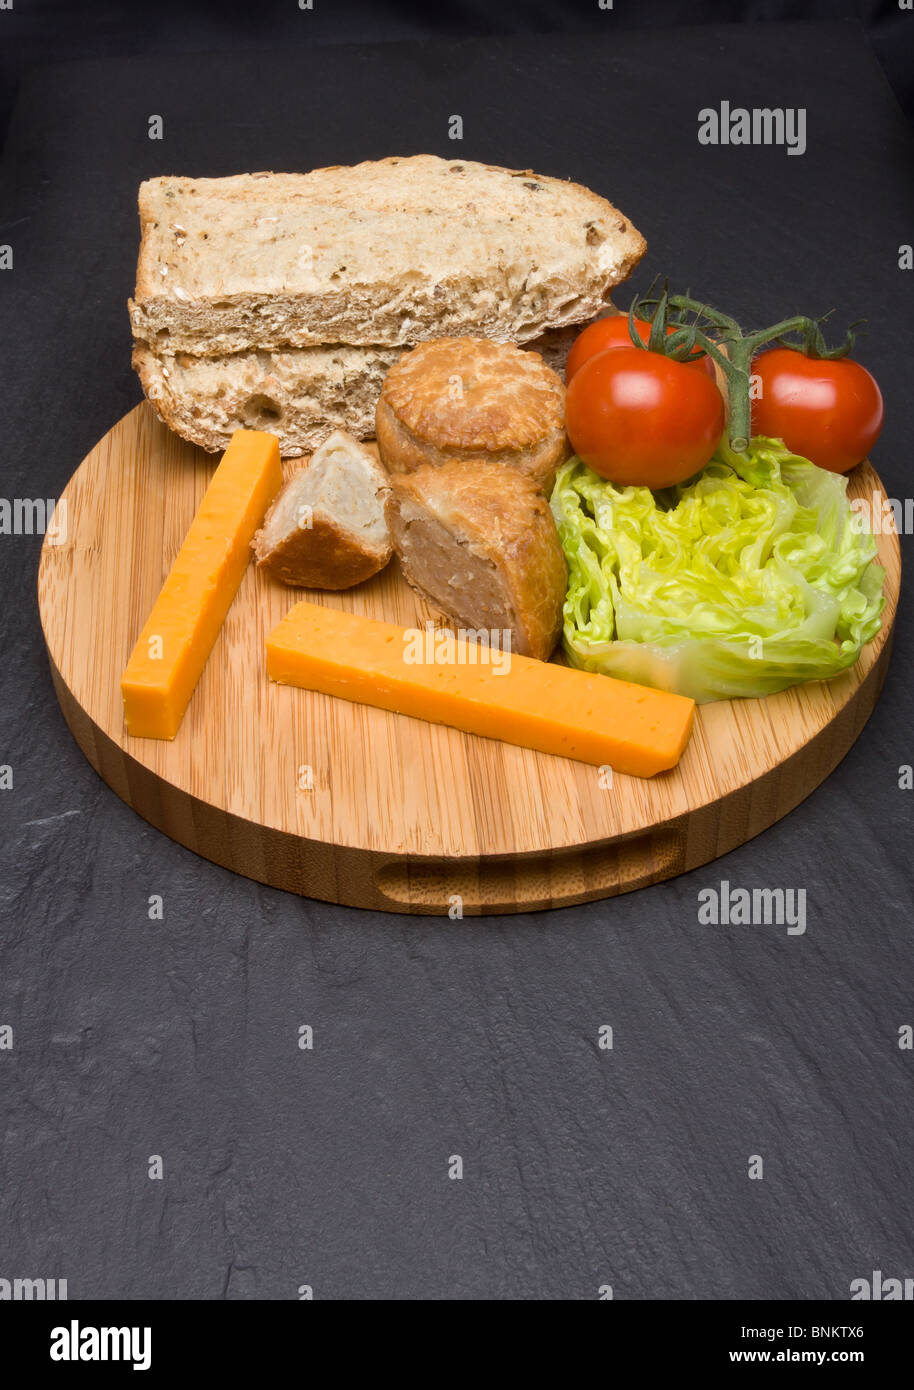 Traditionelle englische Ploughmans Lunch von Käse, Brot, Tomaten, Salat und Pork Pie auf hölzernen Platte. Stockfoto